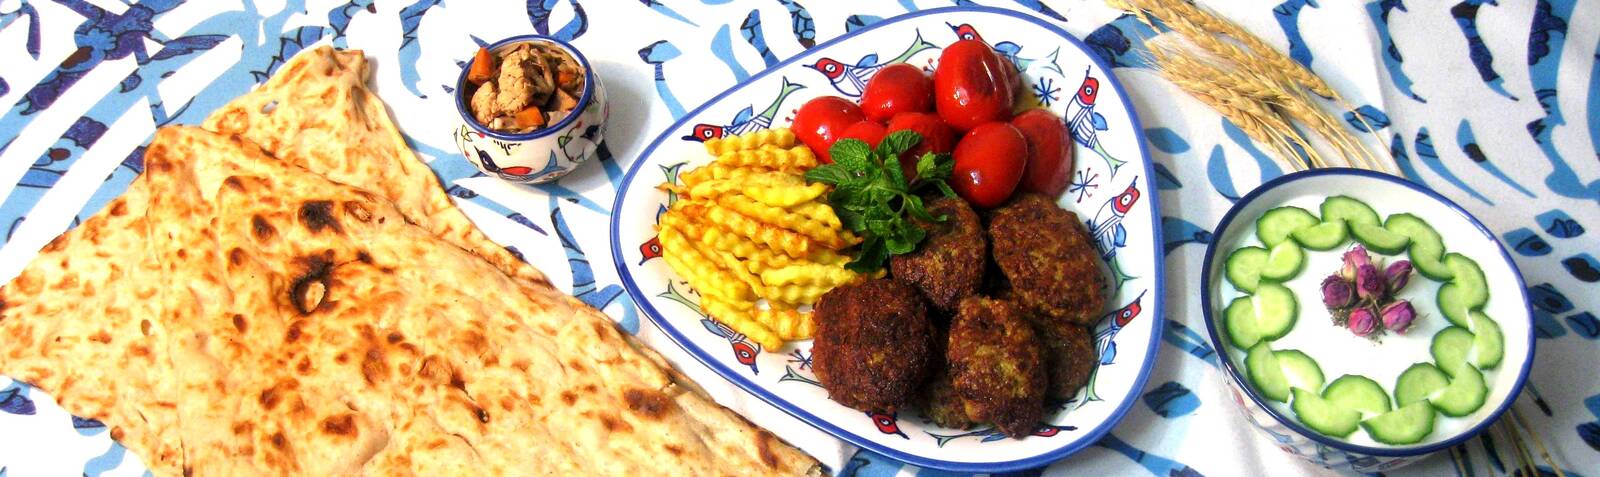 伊朗菜